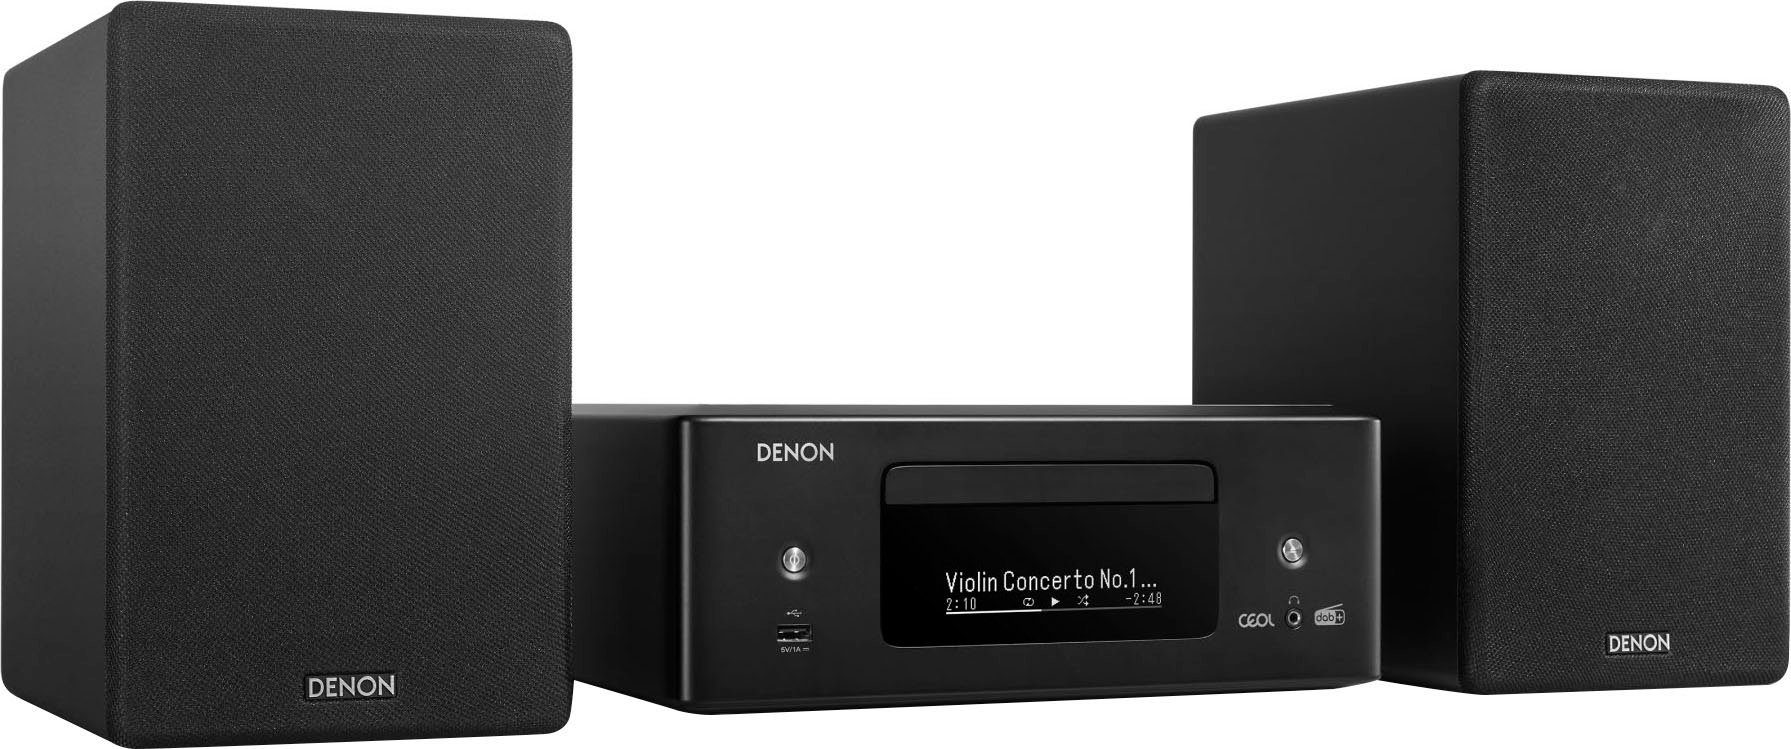 Denon CEOL N12DAB Stereoanlage (Digitalradio (DAB), FM-Tuner, UKW mit RDS, 130 W) schwarz | Stereoanlagen